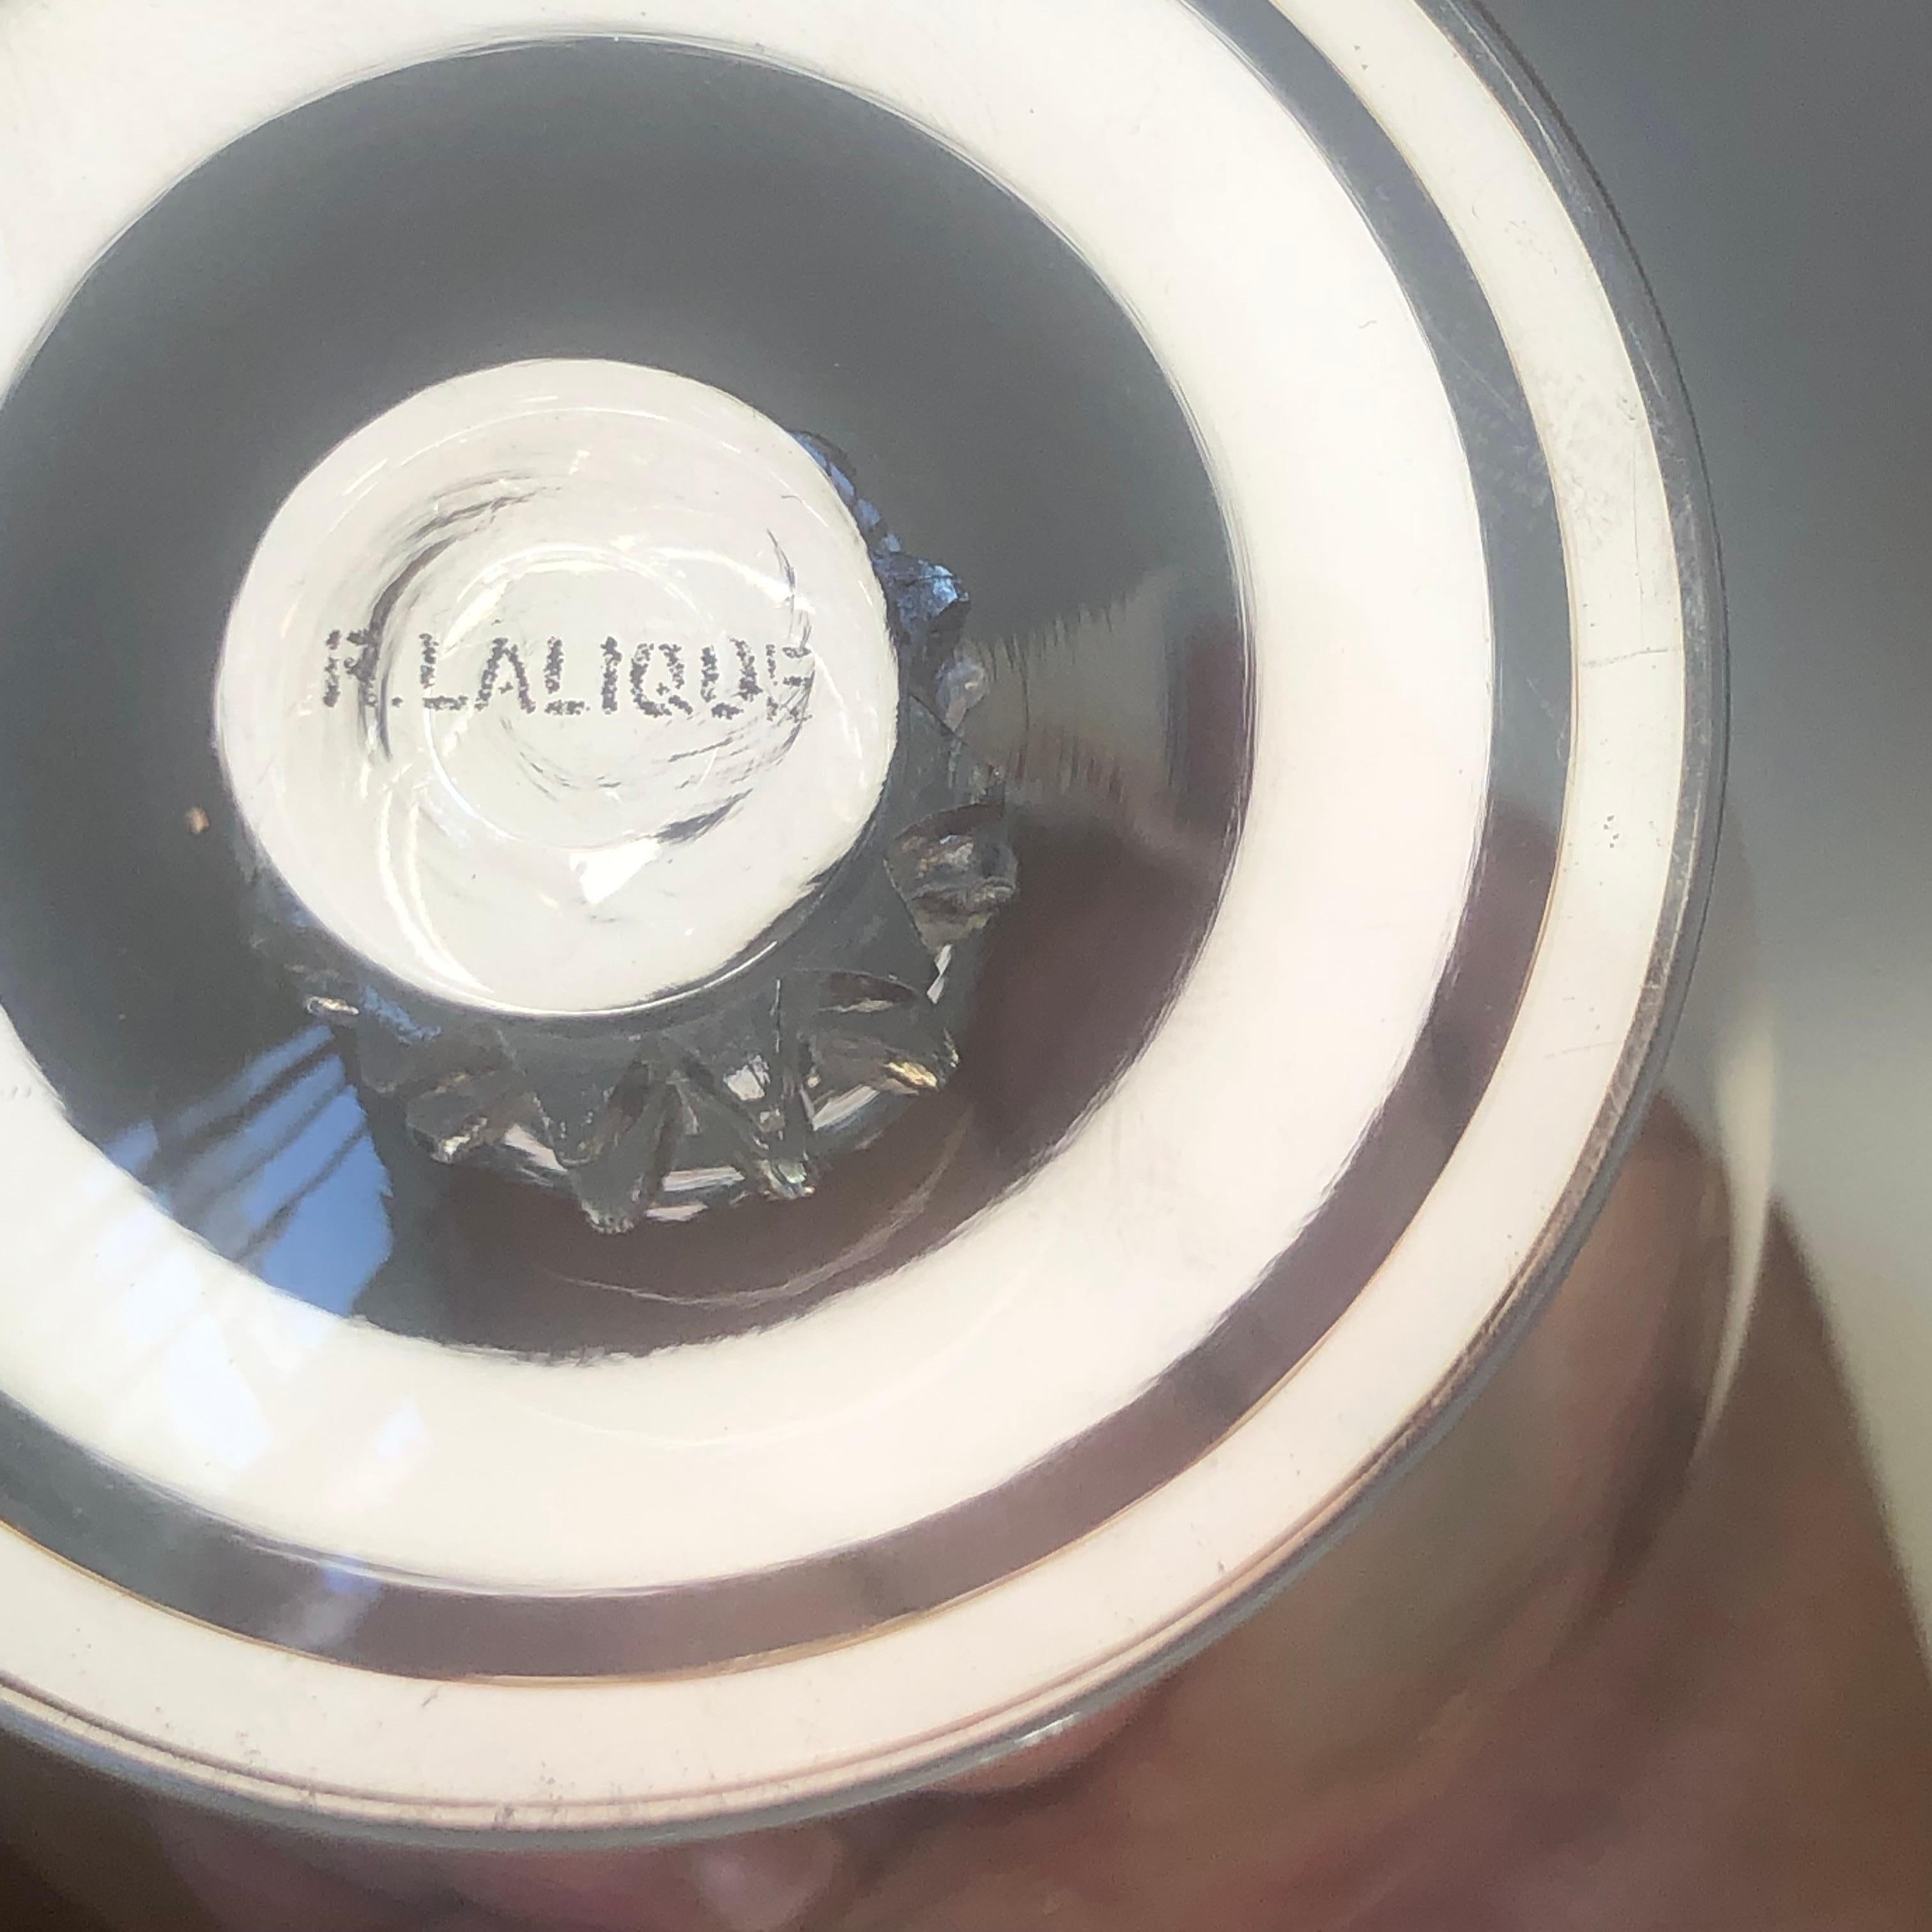 French 1934 Rene Lalique Complet Set 6 Liquor Wine Degustation Glasses Clos Vougeot